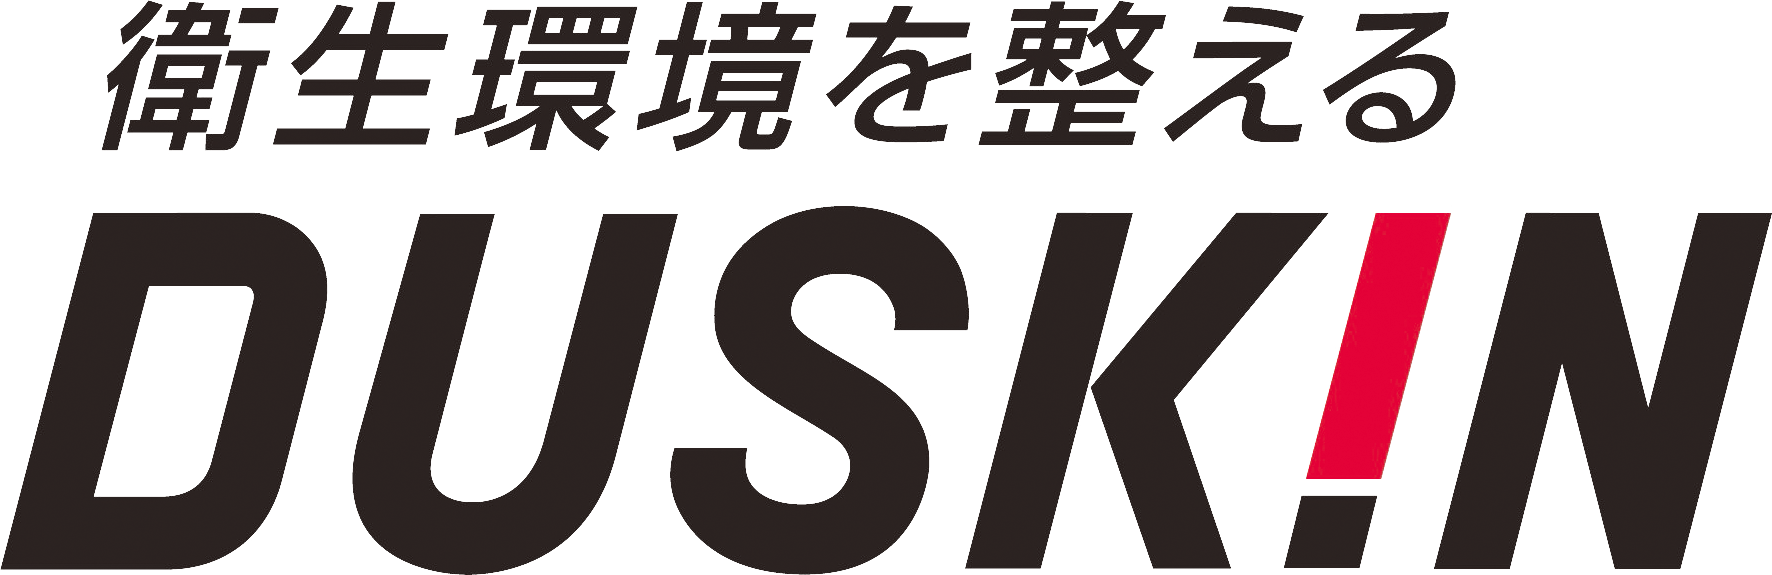 株式会社ダスキンサーブ北海道の商品・サービスの紹介・お申込み ページです。地域に根ざしたサービスでお客様に「喜び」をお届けしています。